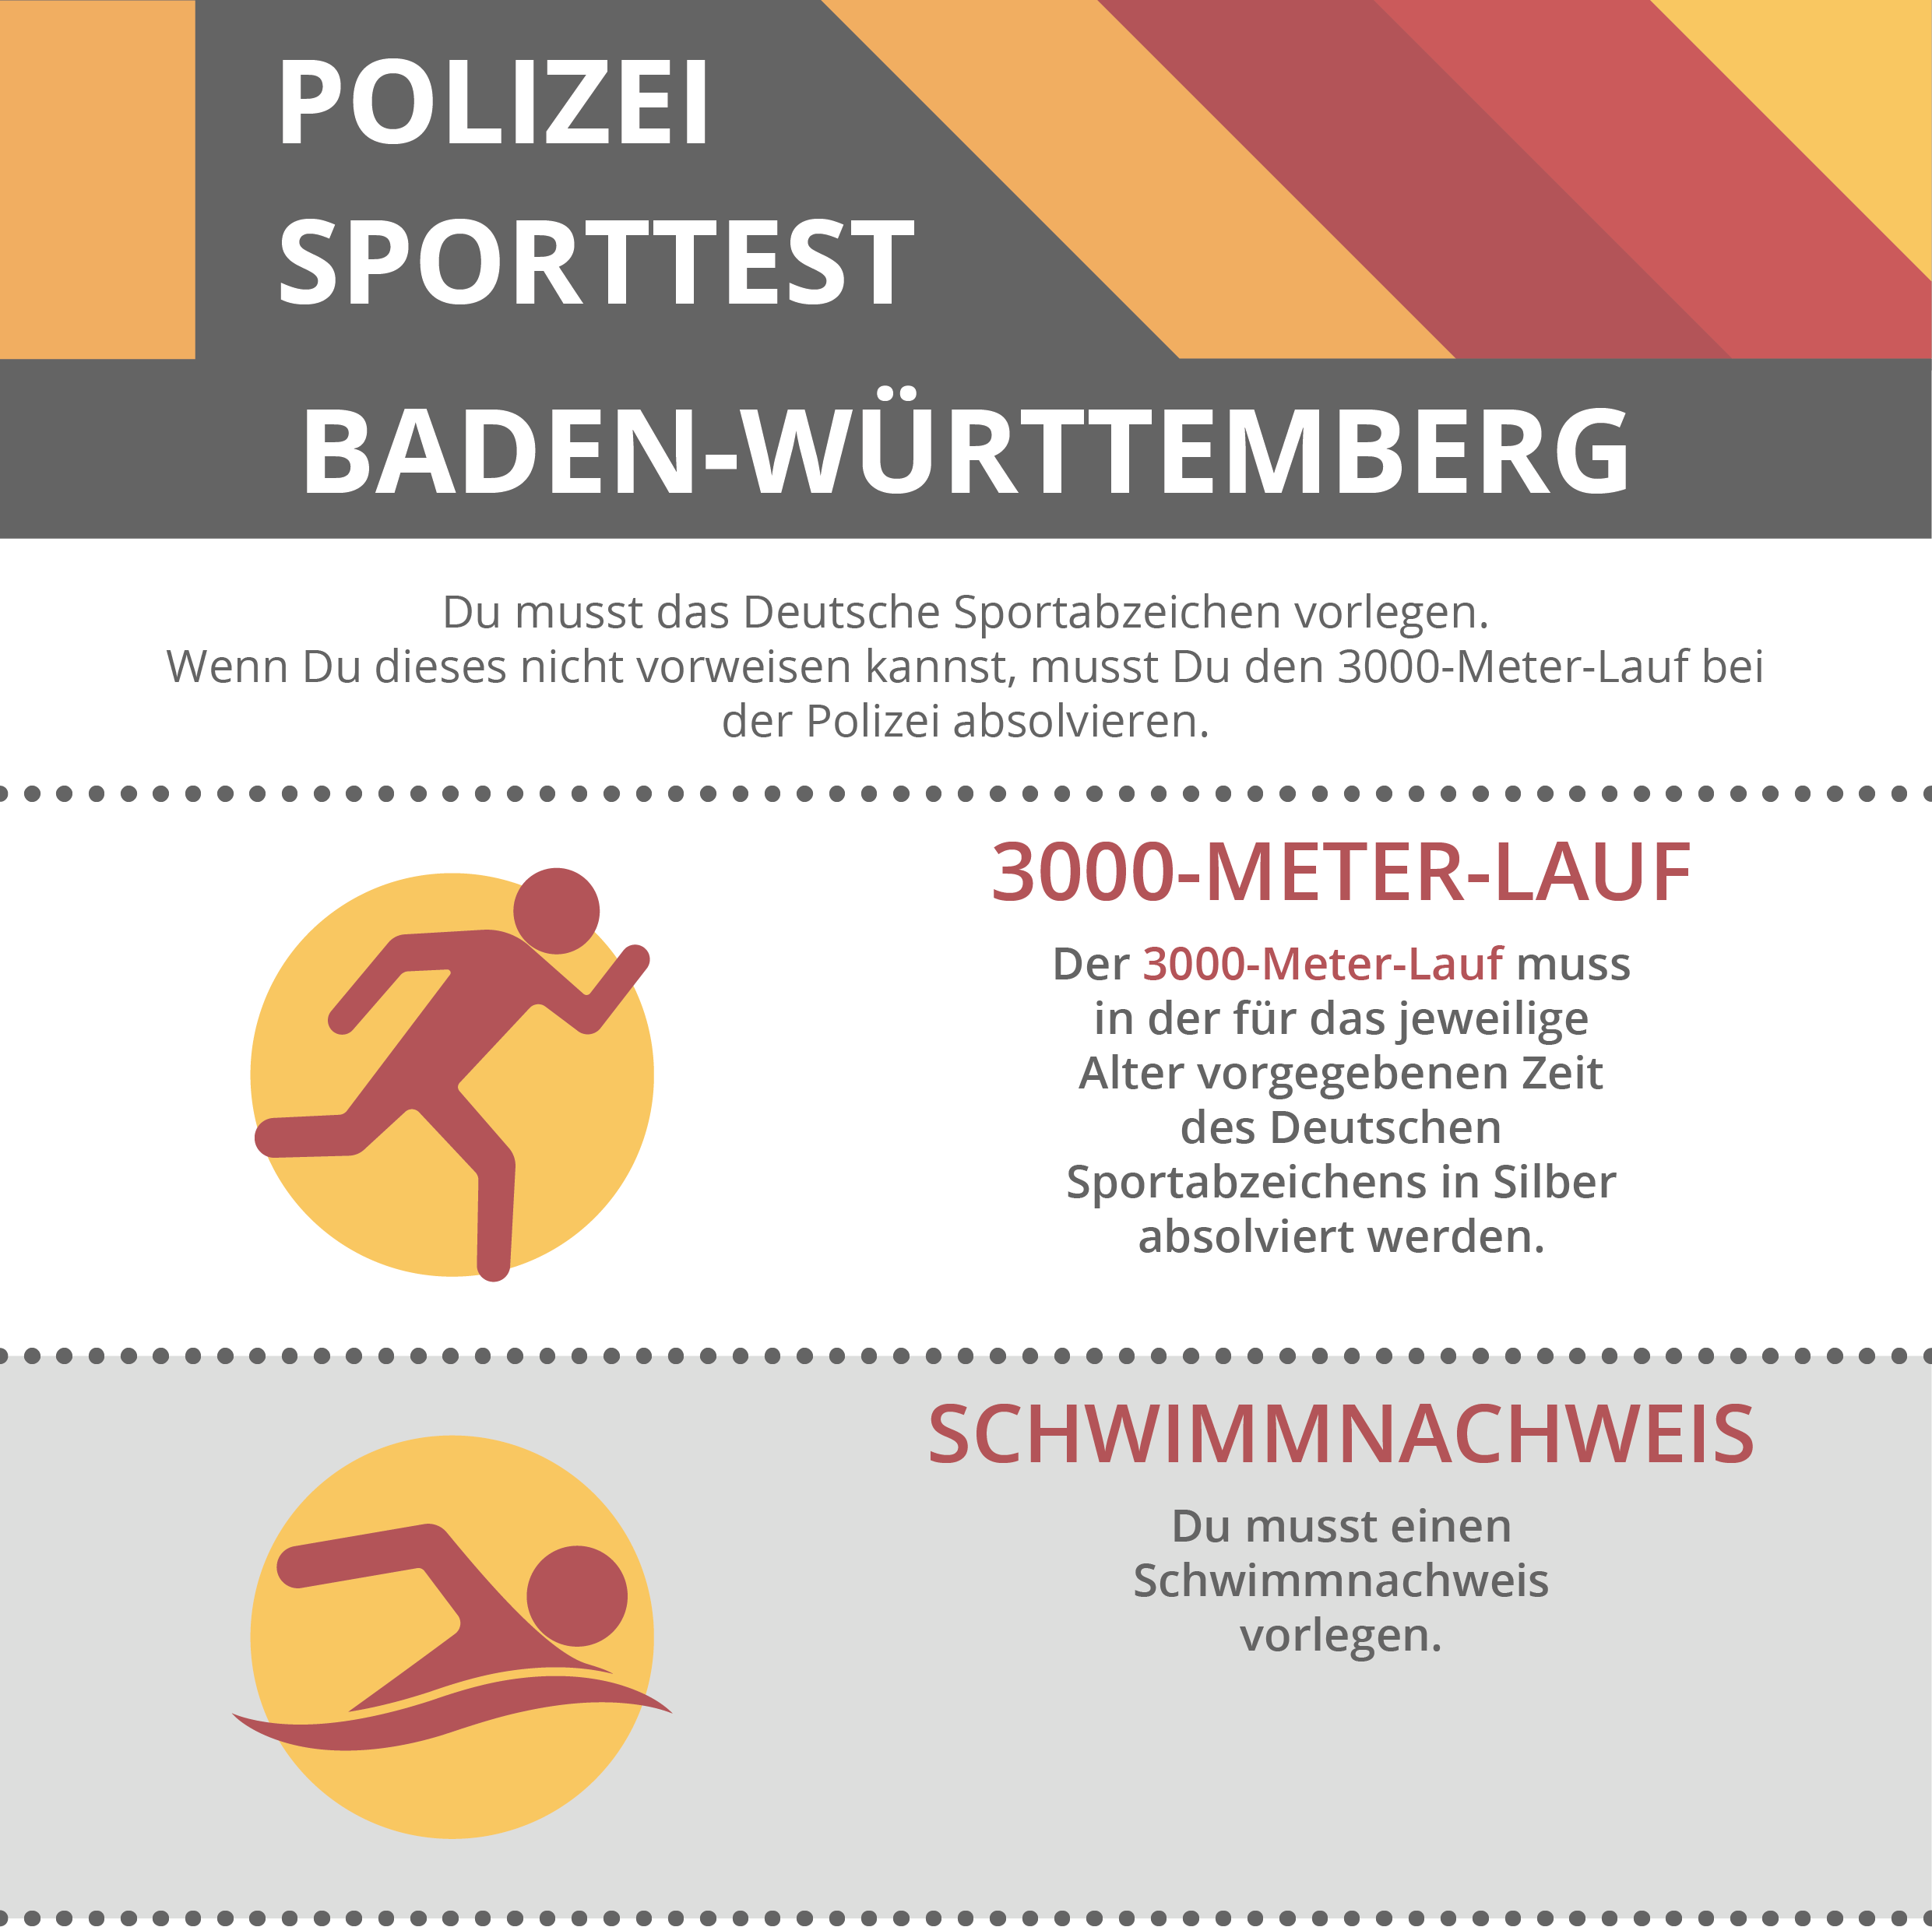 Sporttest Polizei Baden-Württemberg